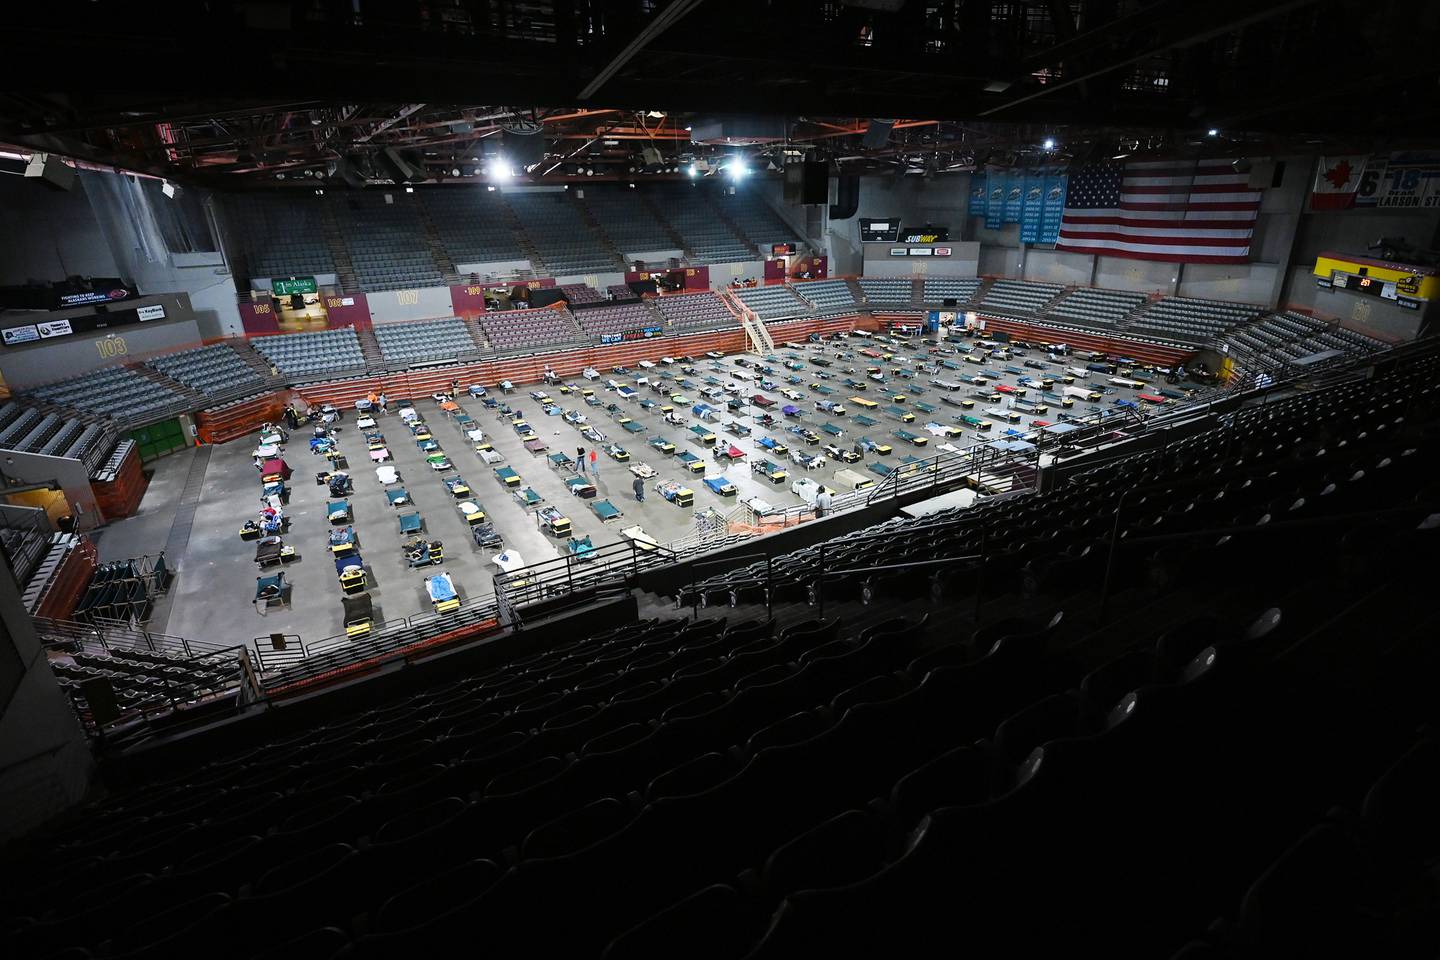 Sullivan Arena mass homeless shelter